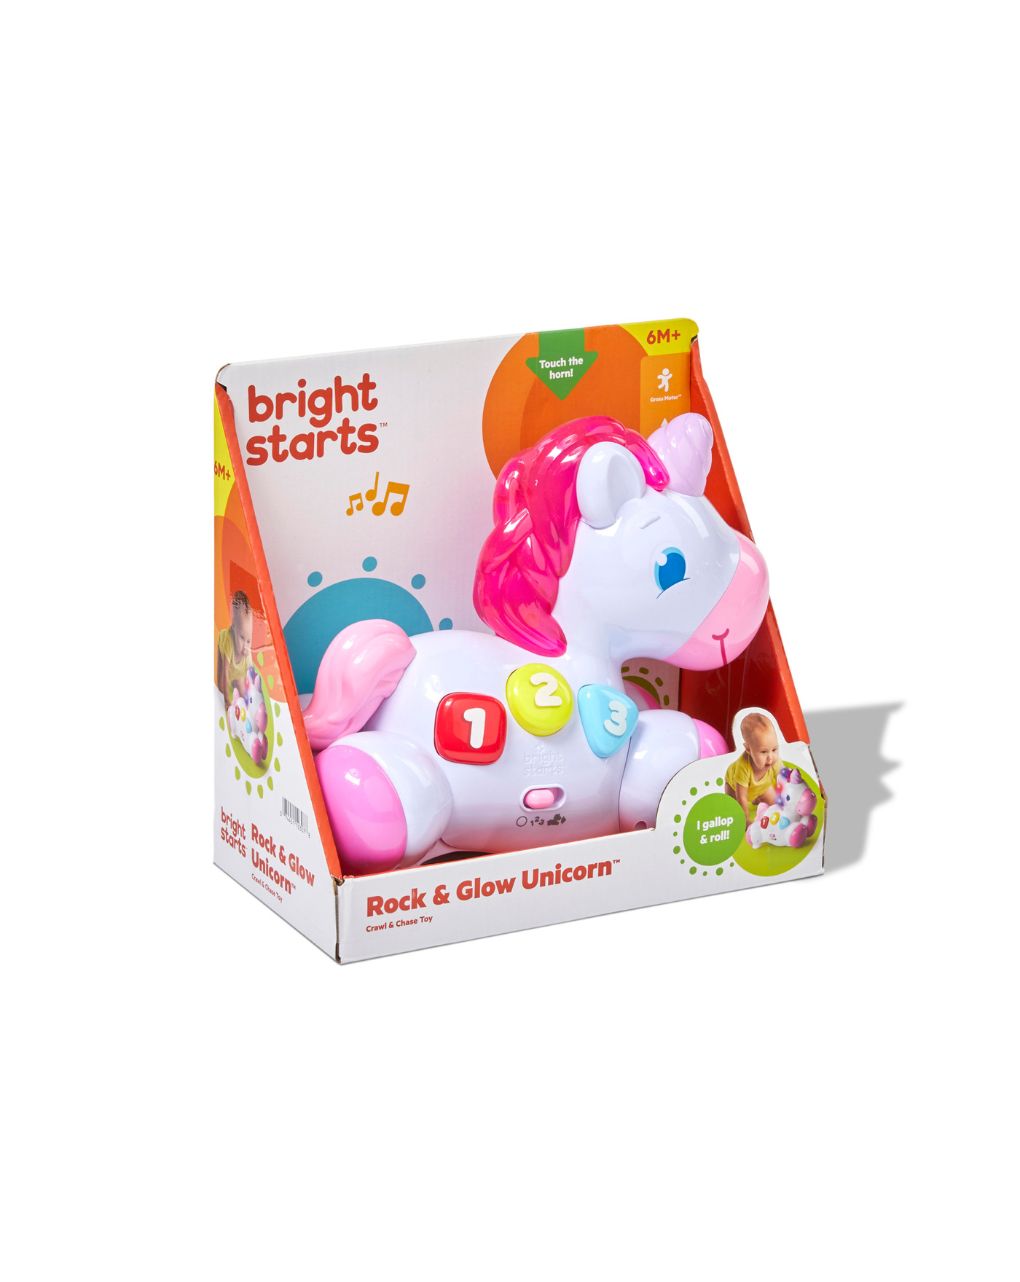 Bright starts kids ii llb rock & glow unicorn παιχνίδι 10307 - KIDS II